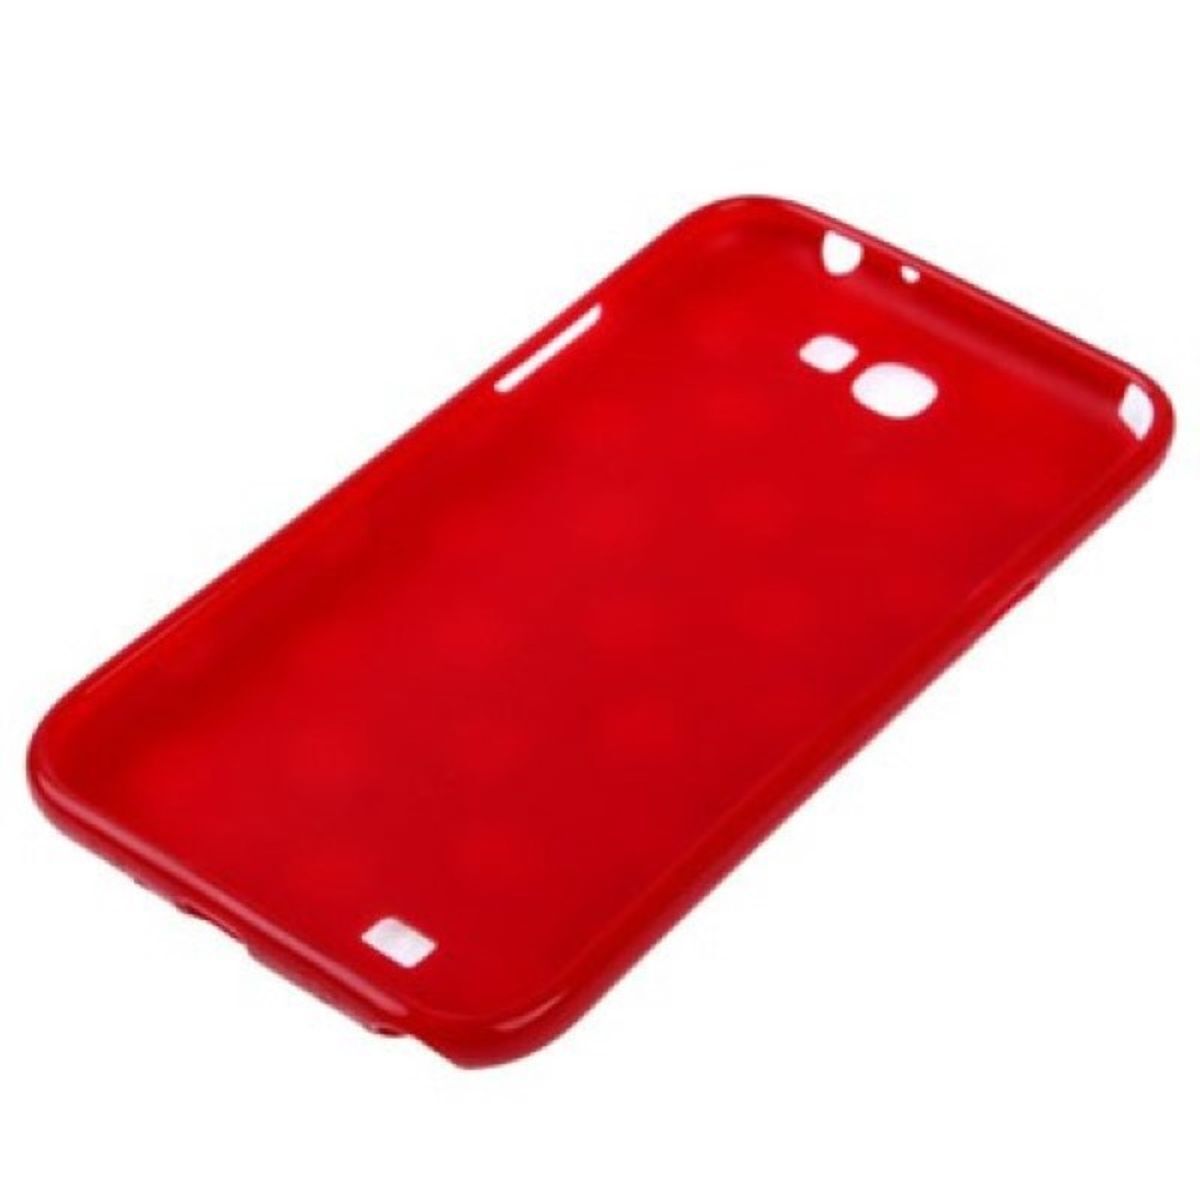 Schutzhülle Handycase Telefonetui Cover für Handy Samsung Galaxy Note II N7100